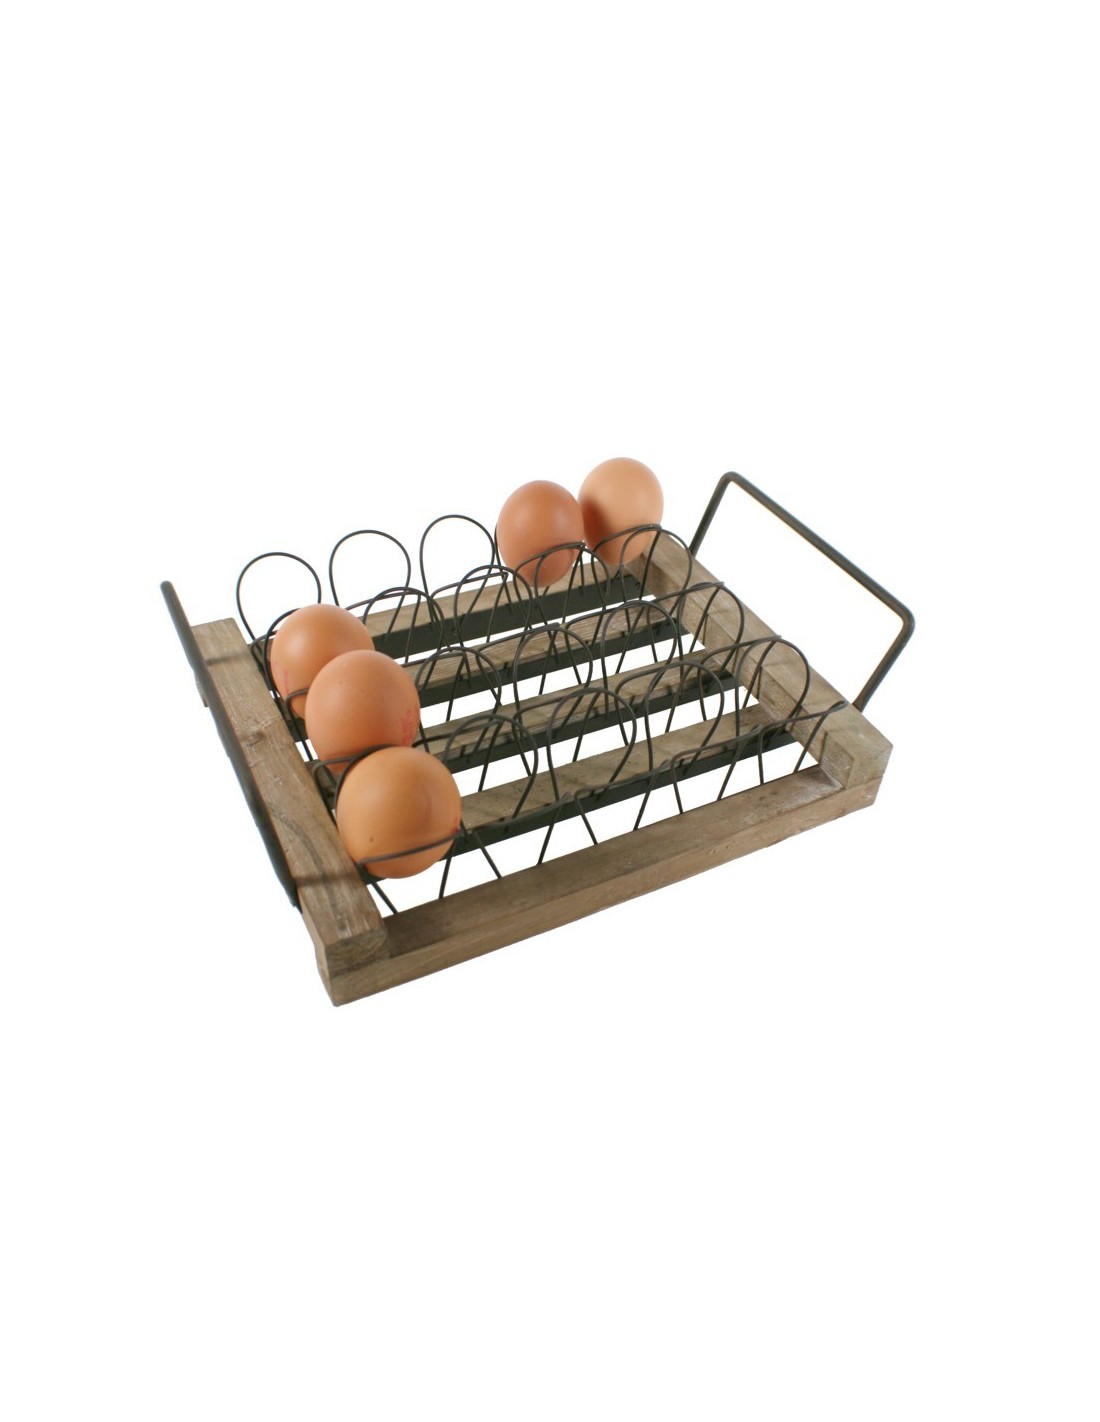 Dispensador de huevos de madera y metal de sobremesa estilo vintage capacidad 20 huevos utensilio cocina